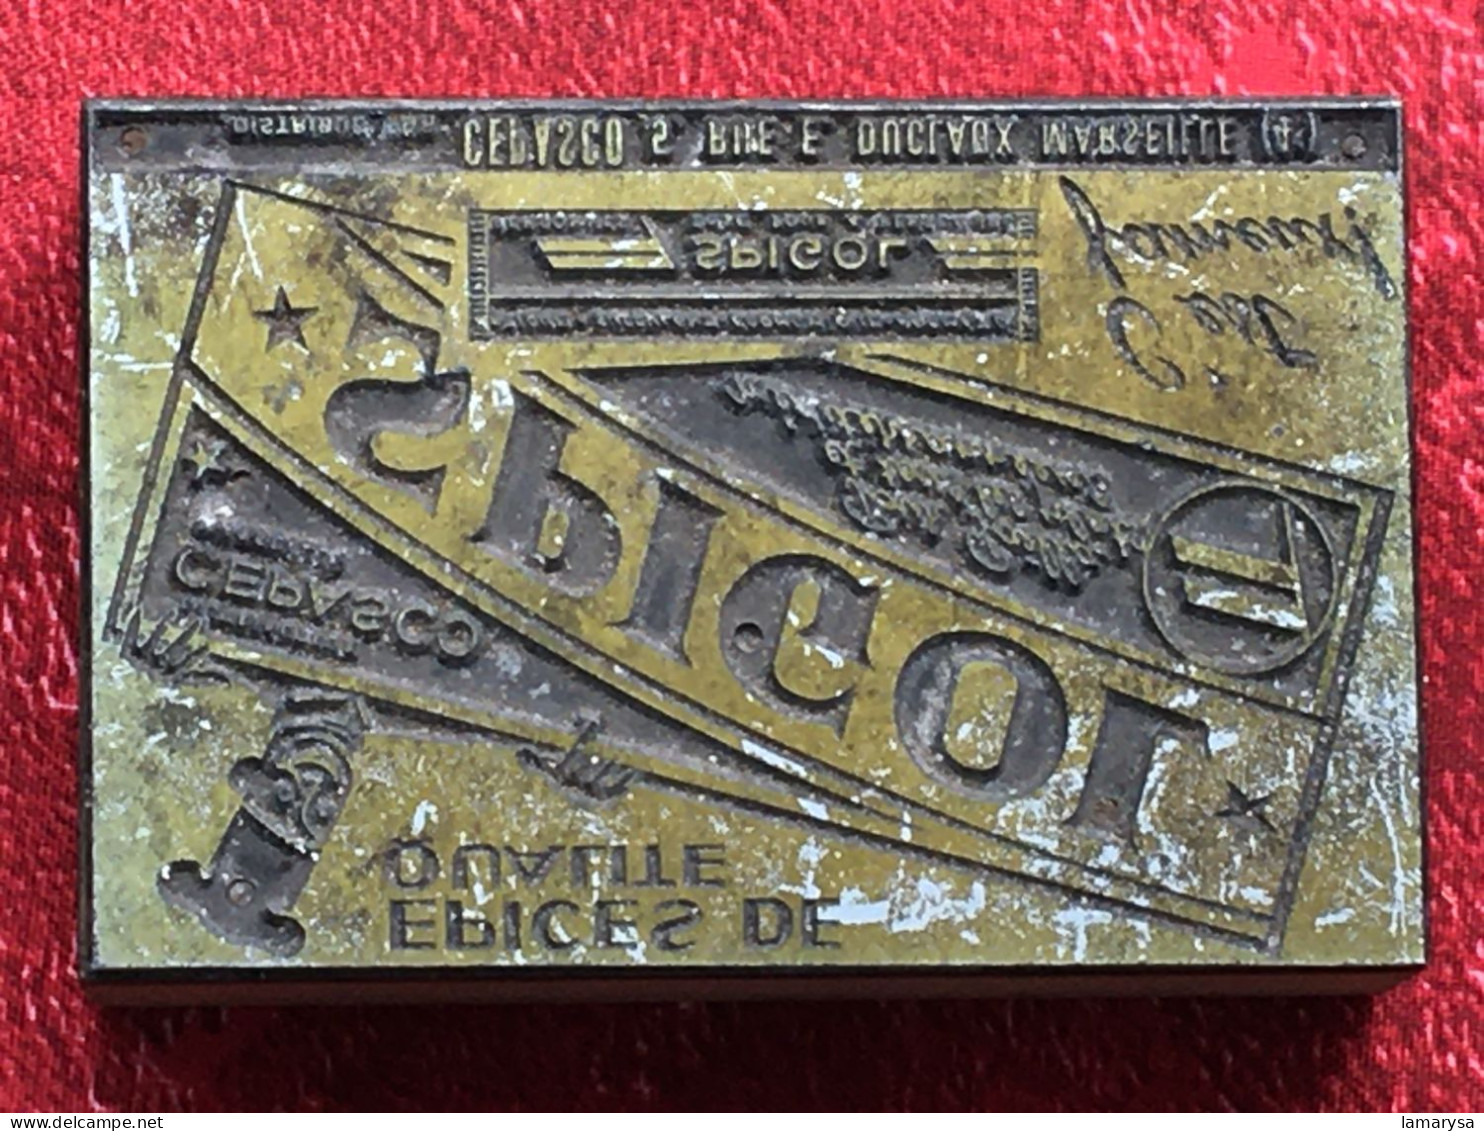 Spigol épices Safran-Plaque d'Imprimerie Vintage-Publicité-Tampon publicitaire-Marseille-pr étiquète scrapbooking-déco